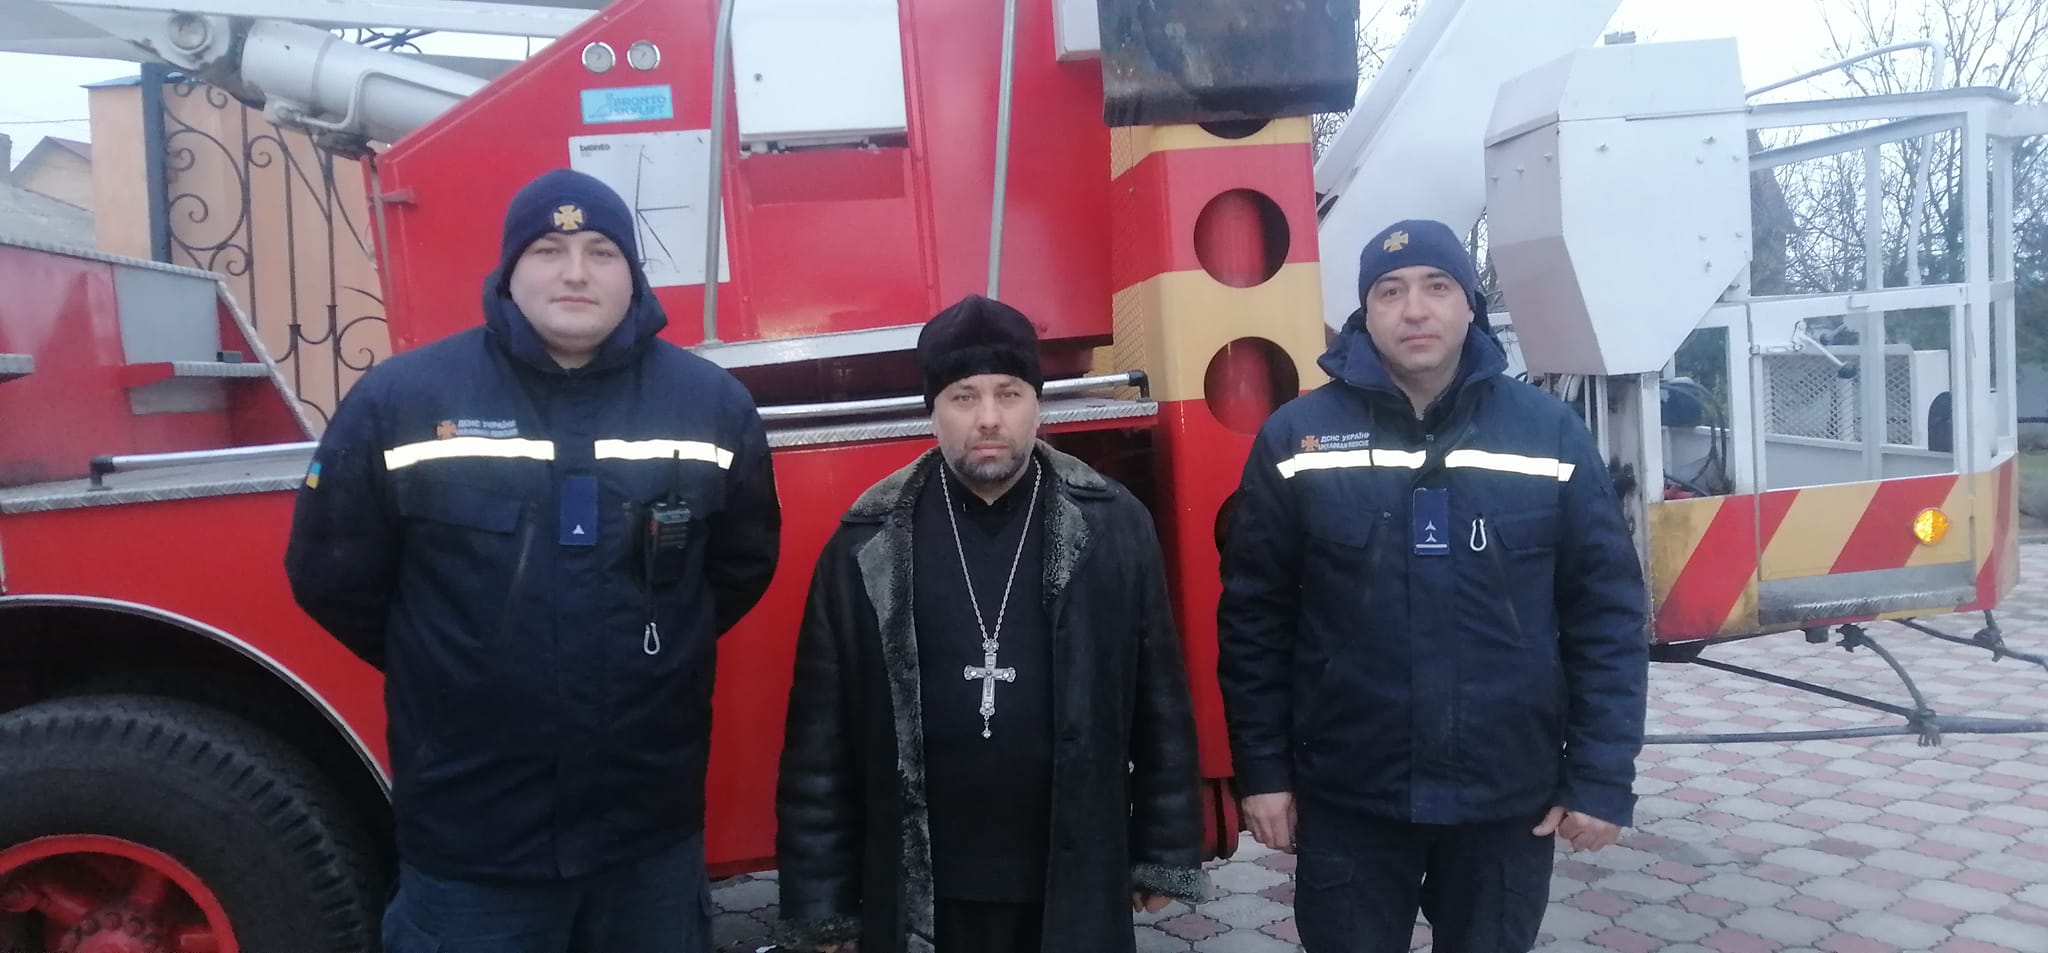 Православная община Измаильского храма выражает благодарность ГСЧС за оперативную помощь в устранении последствий непогоды